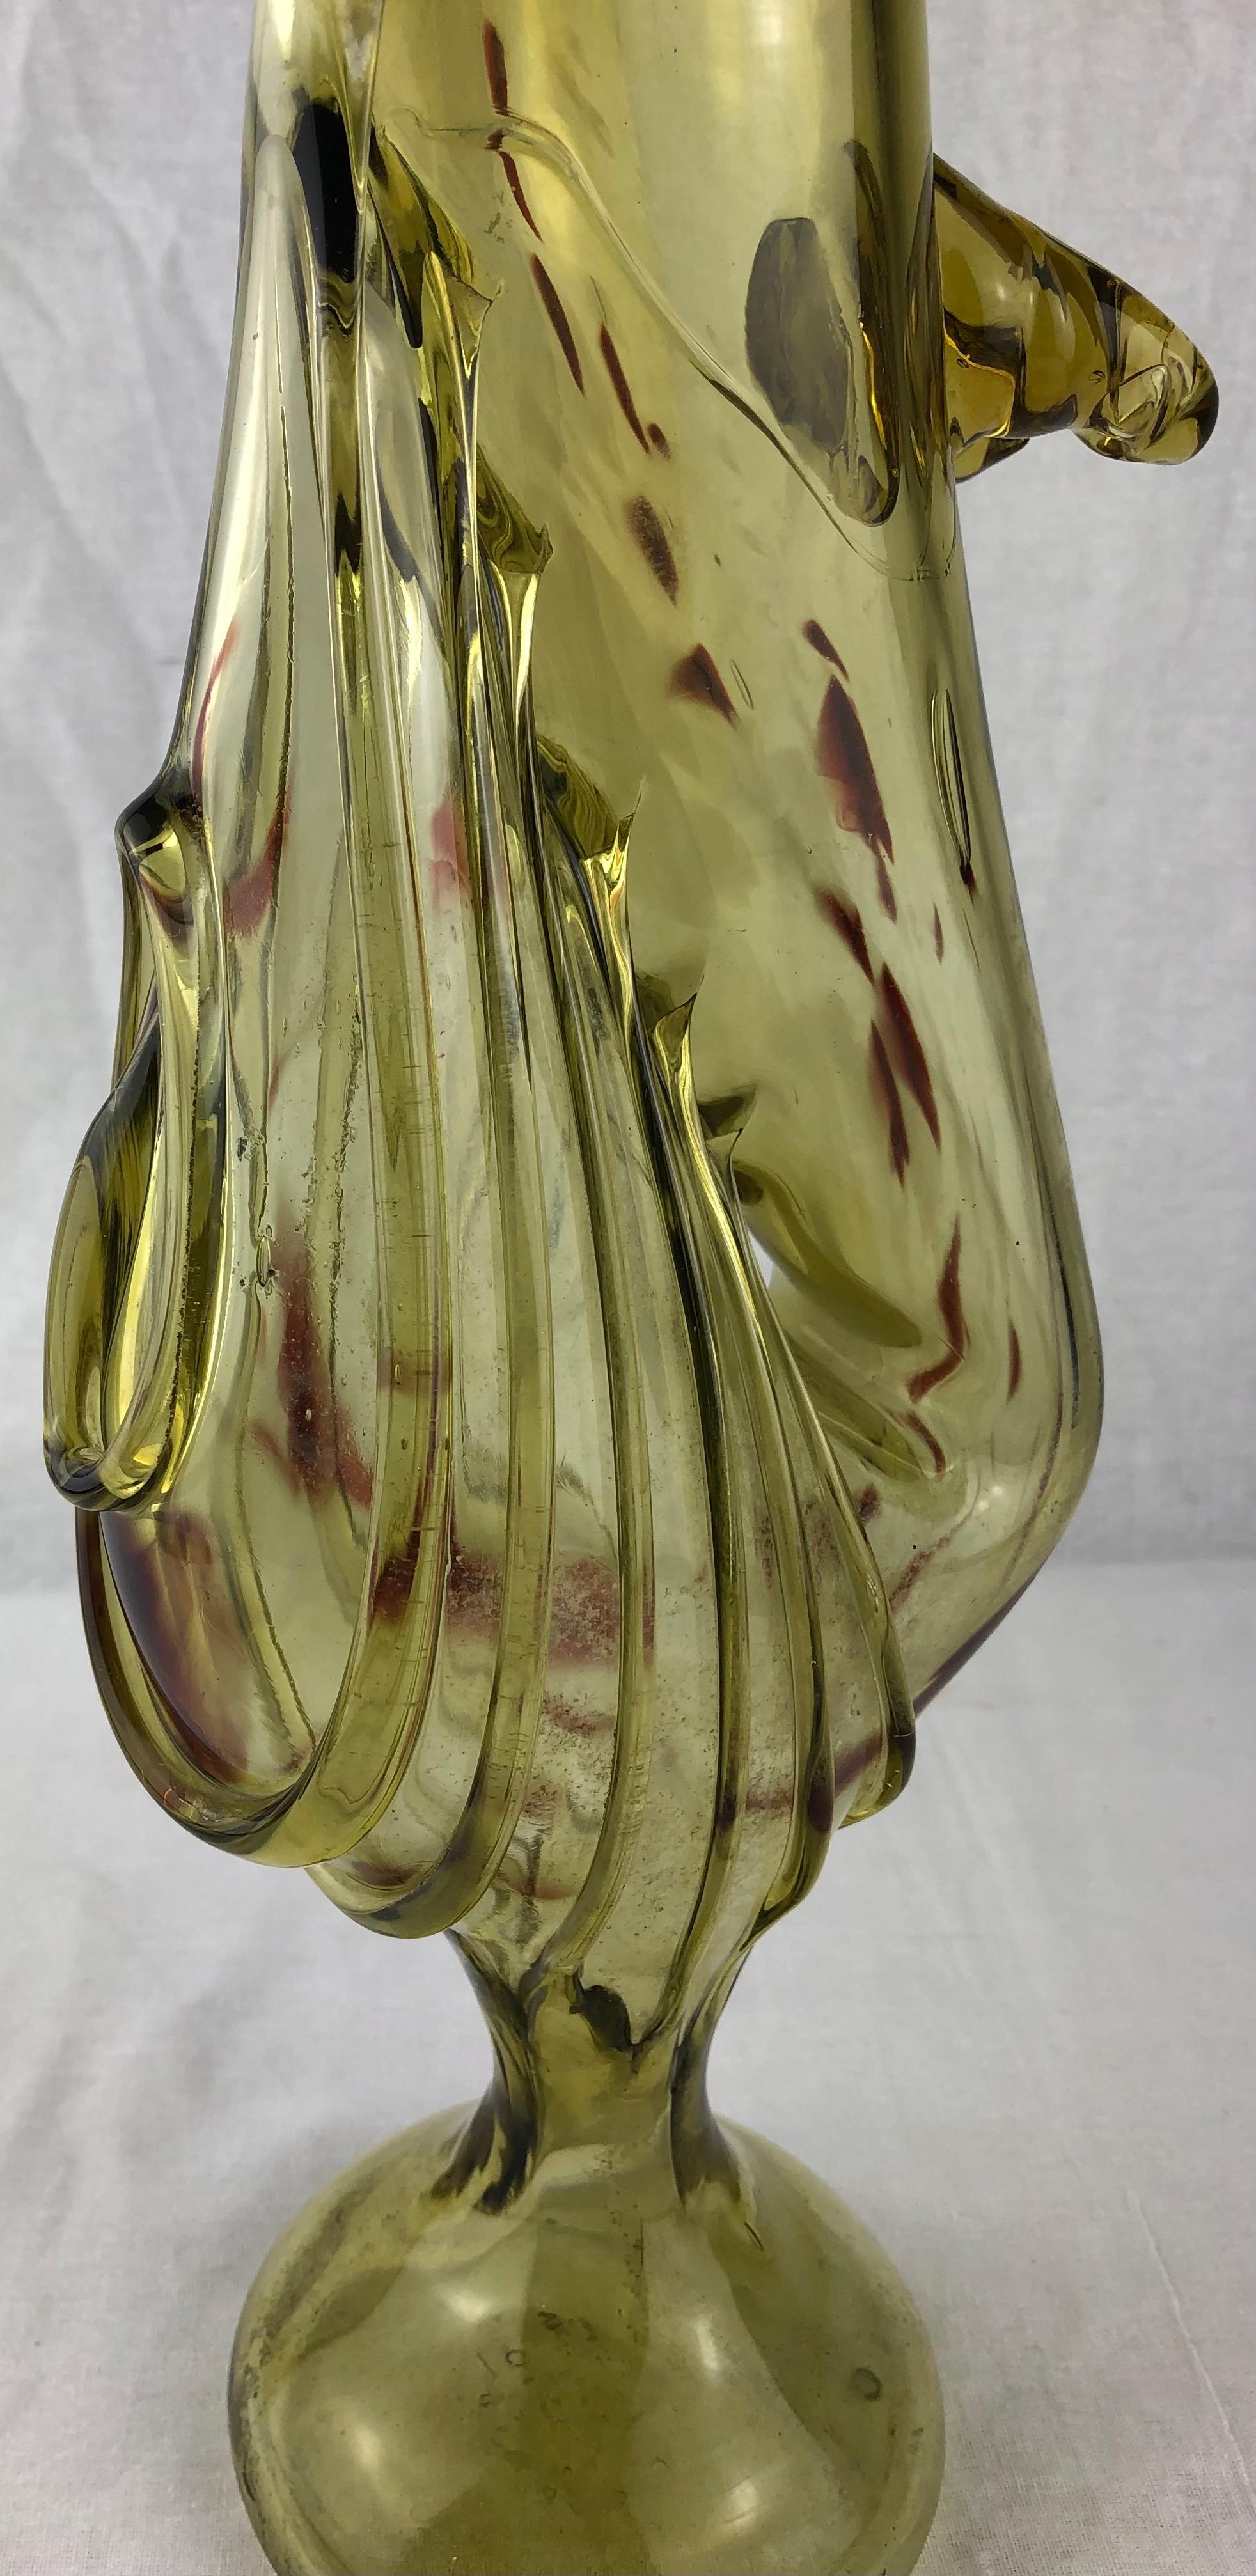 Tan France Auction Pick

Vase à fleurs en verre d'art de Murano dans une belle forme inhabituelle. Ce joli vase artisanal est parfait pour présenter vos fleurs préférées.

Il rehaussera toute table, étagère ou comptoir. 

Dimensions :
Profondeur 